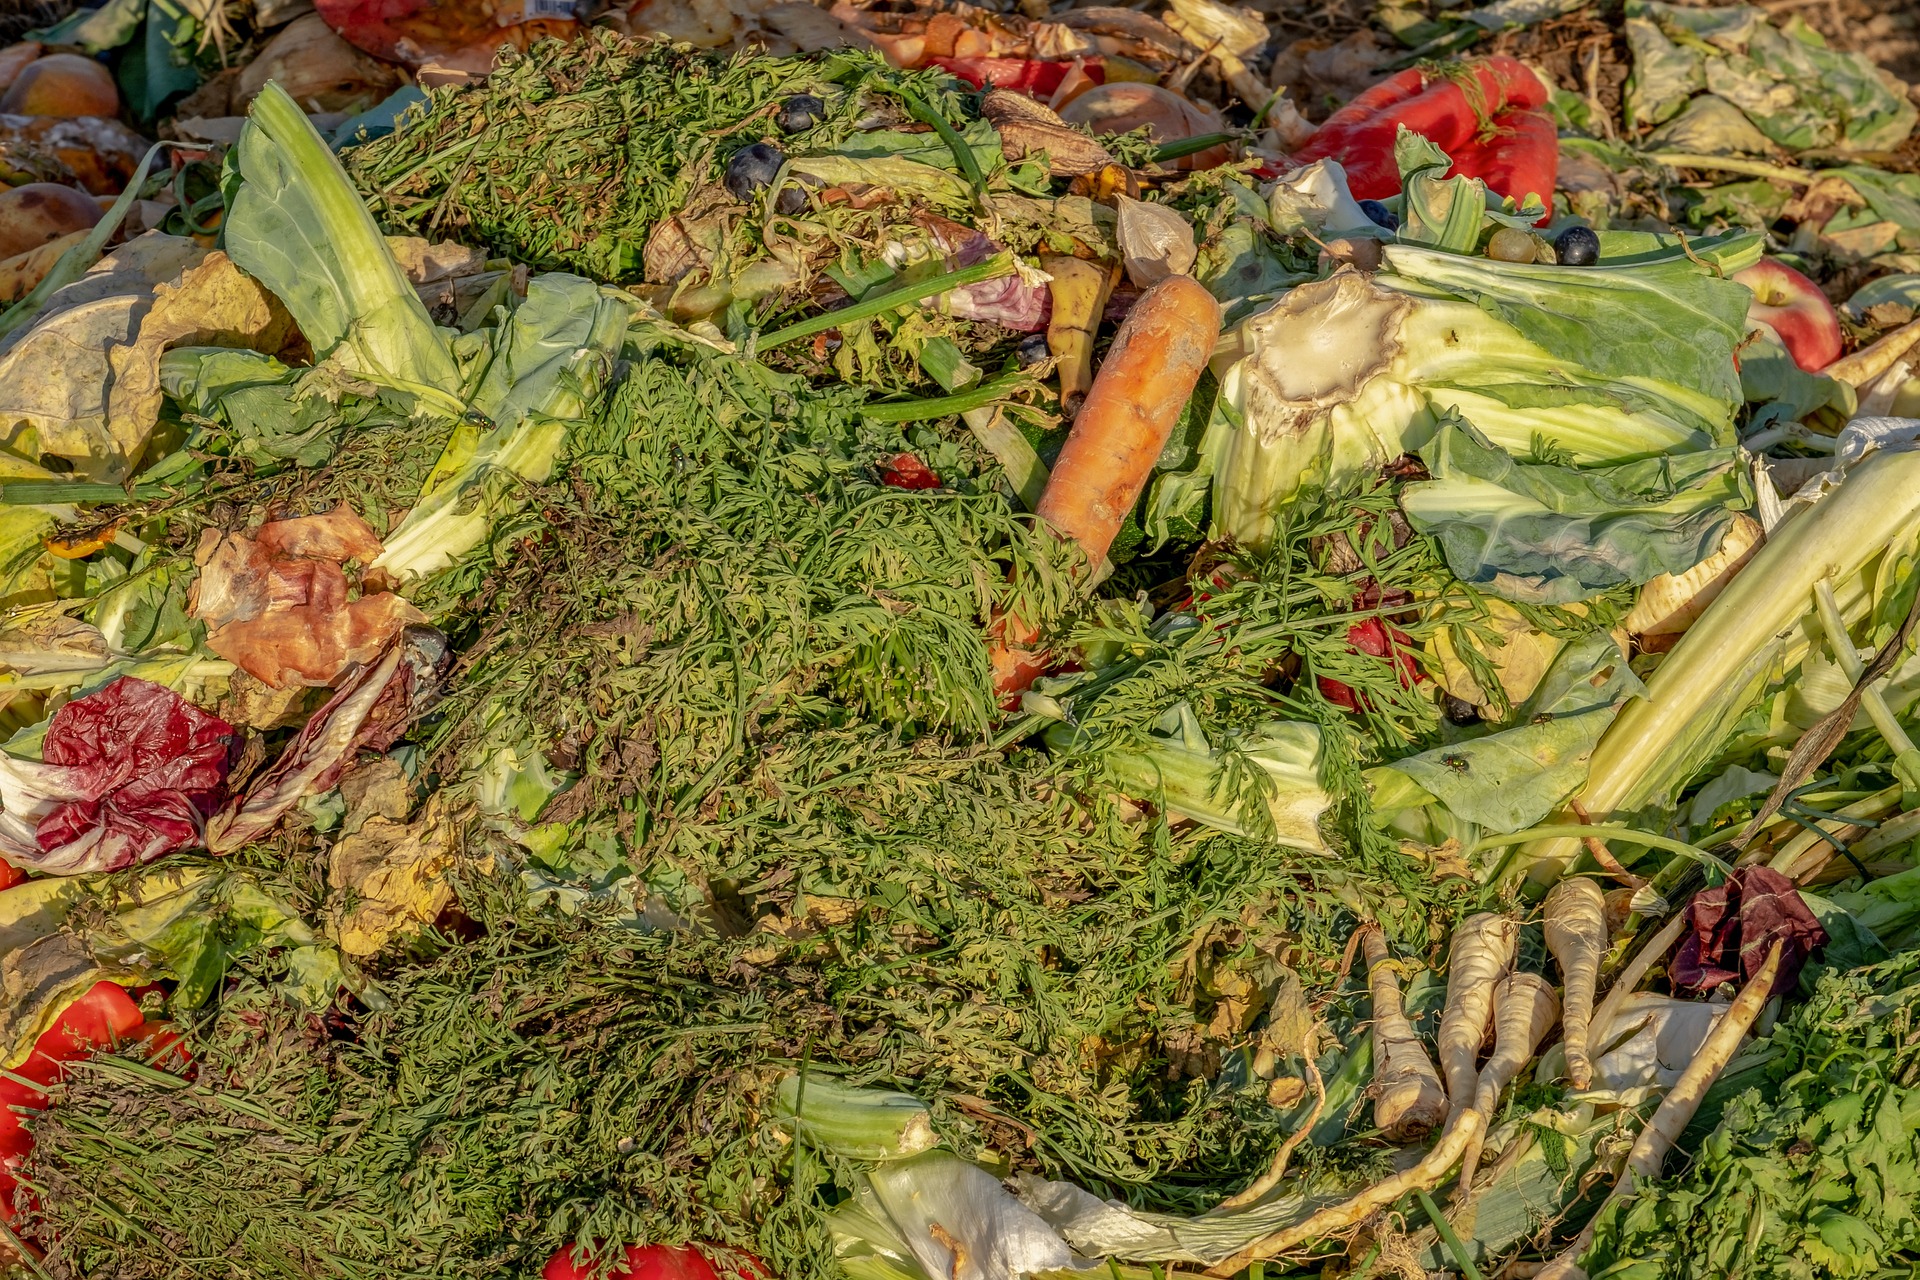 Kompostierung ist ein wichtiger Baustein von zero-waste